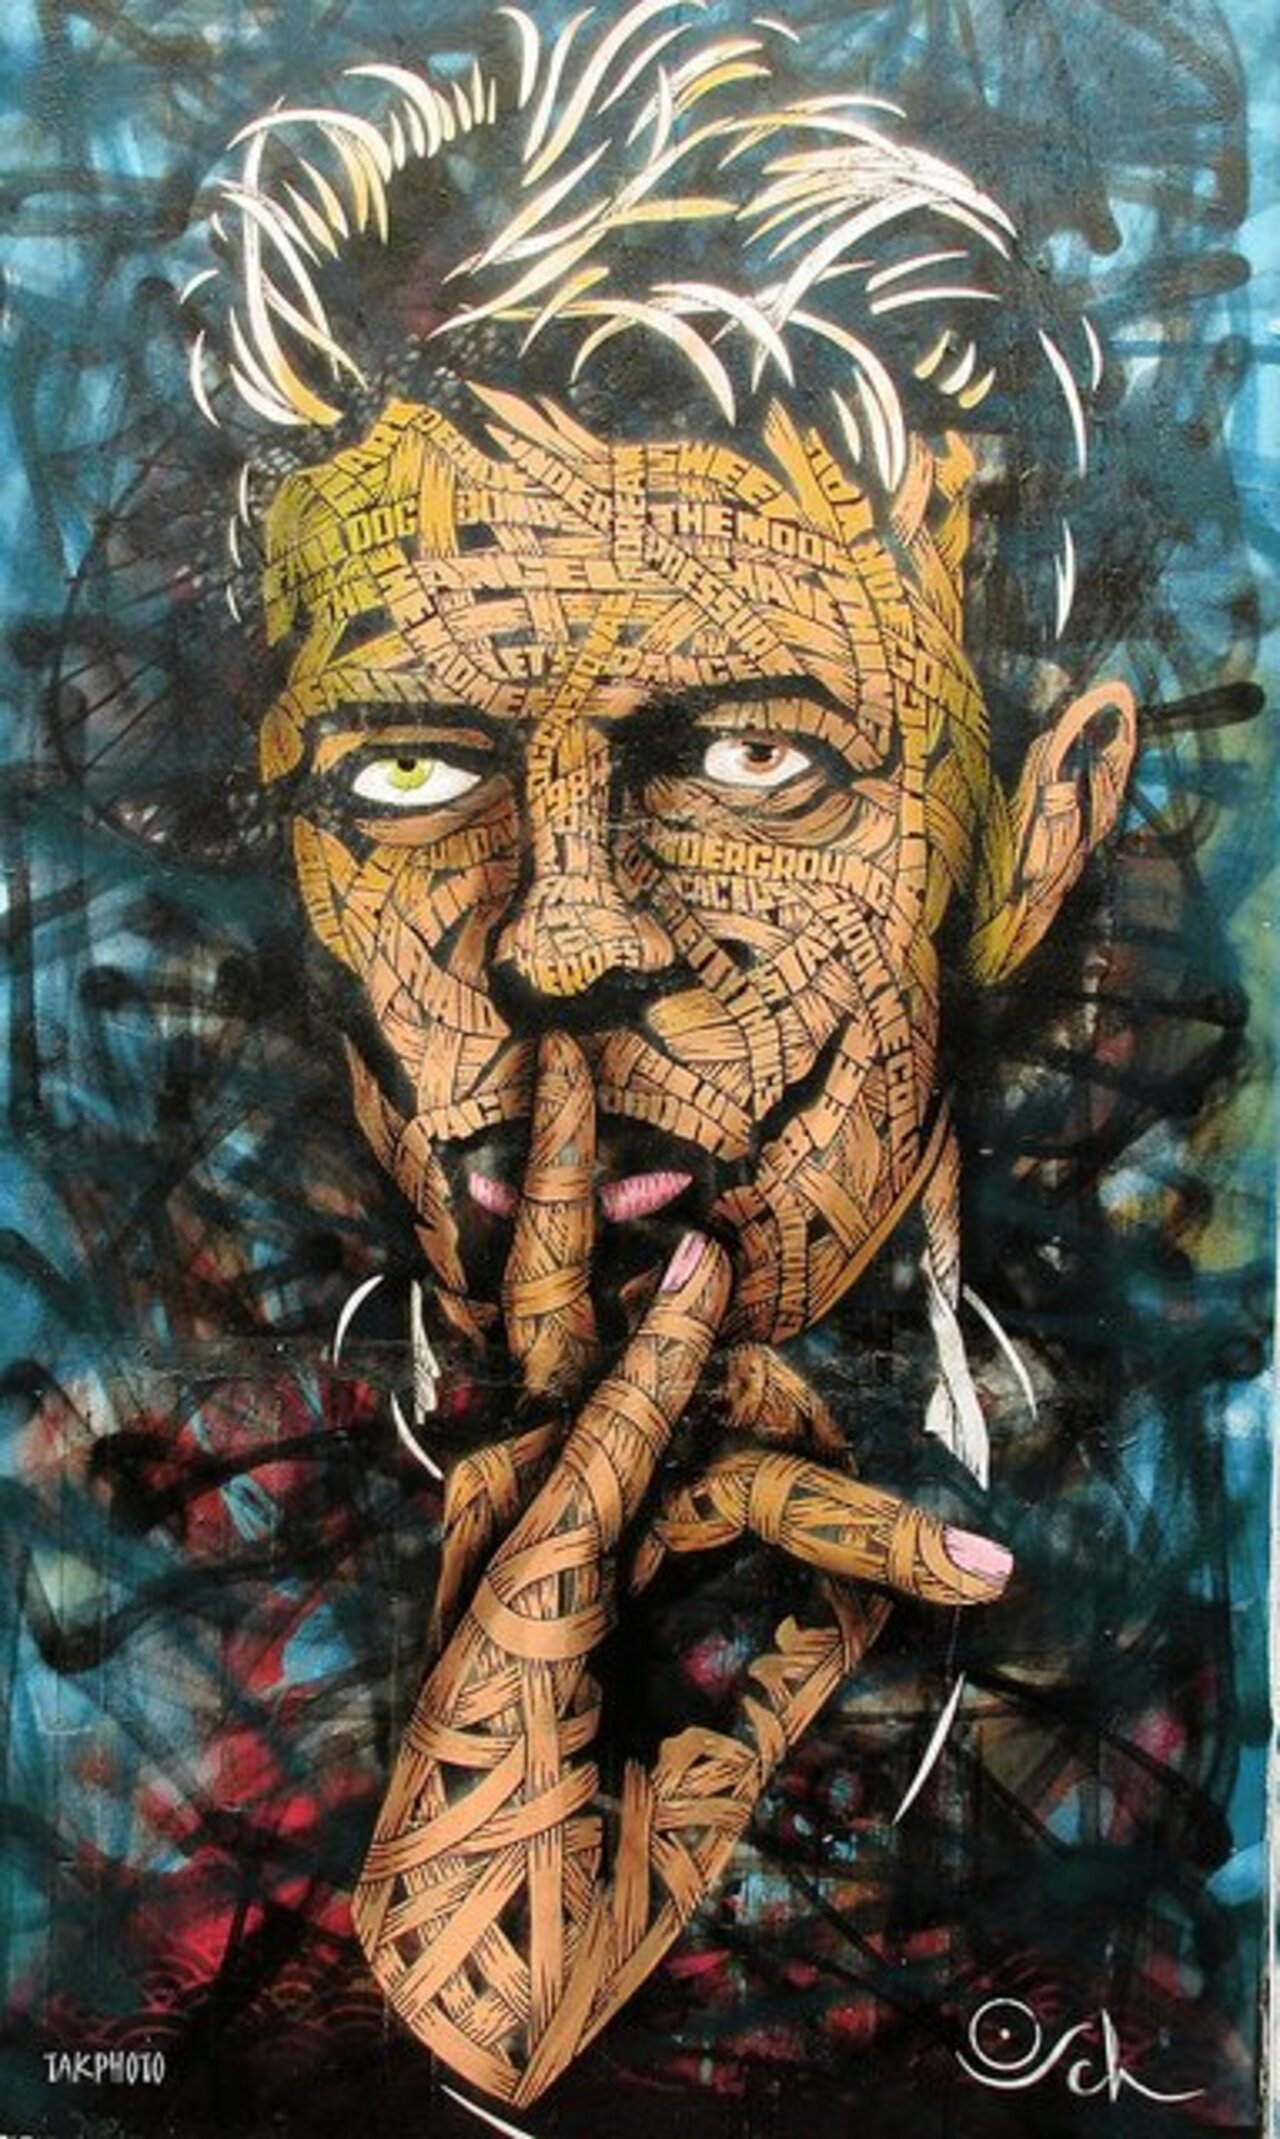 #Streetart #urbanart David Bowie in Westbourne Grove, West London by #artist Otto Schade #DavidBowie #graffiti https://t.co/fVBGJaXTN3